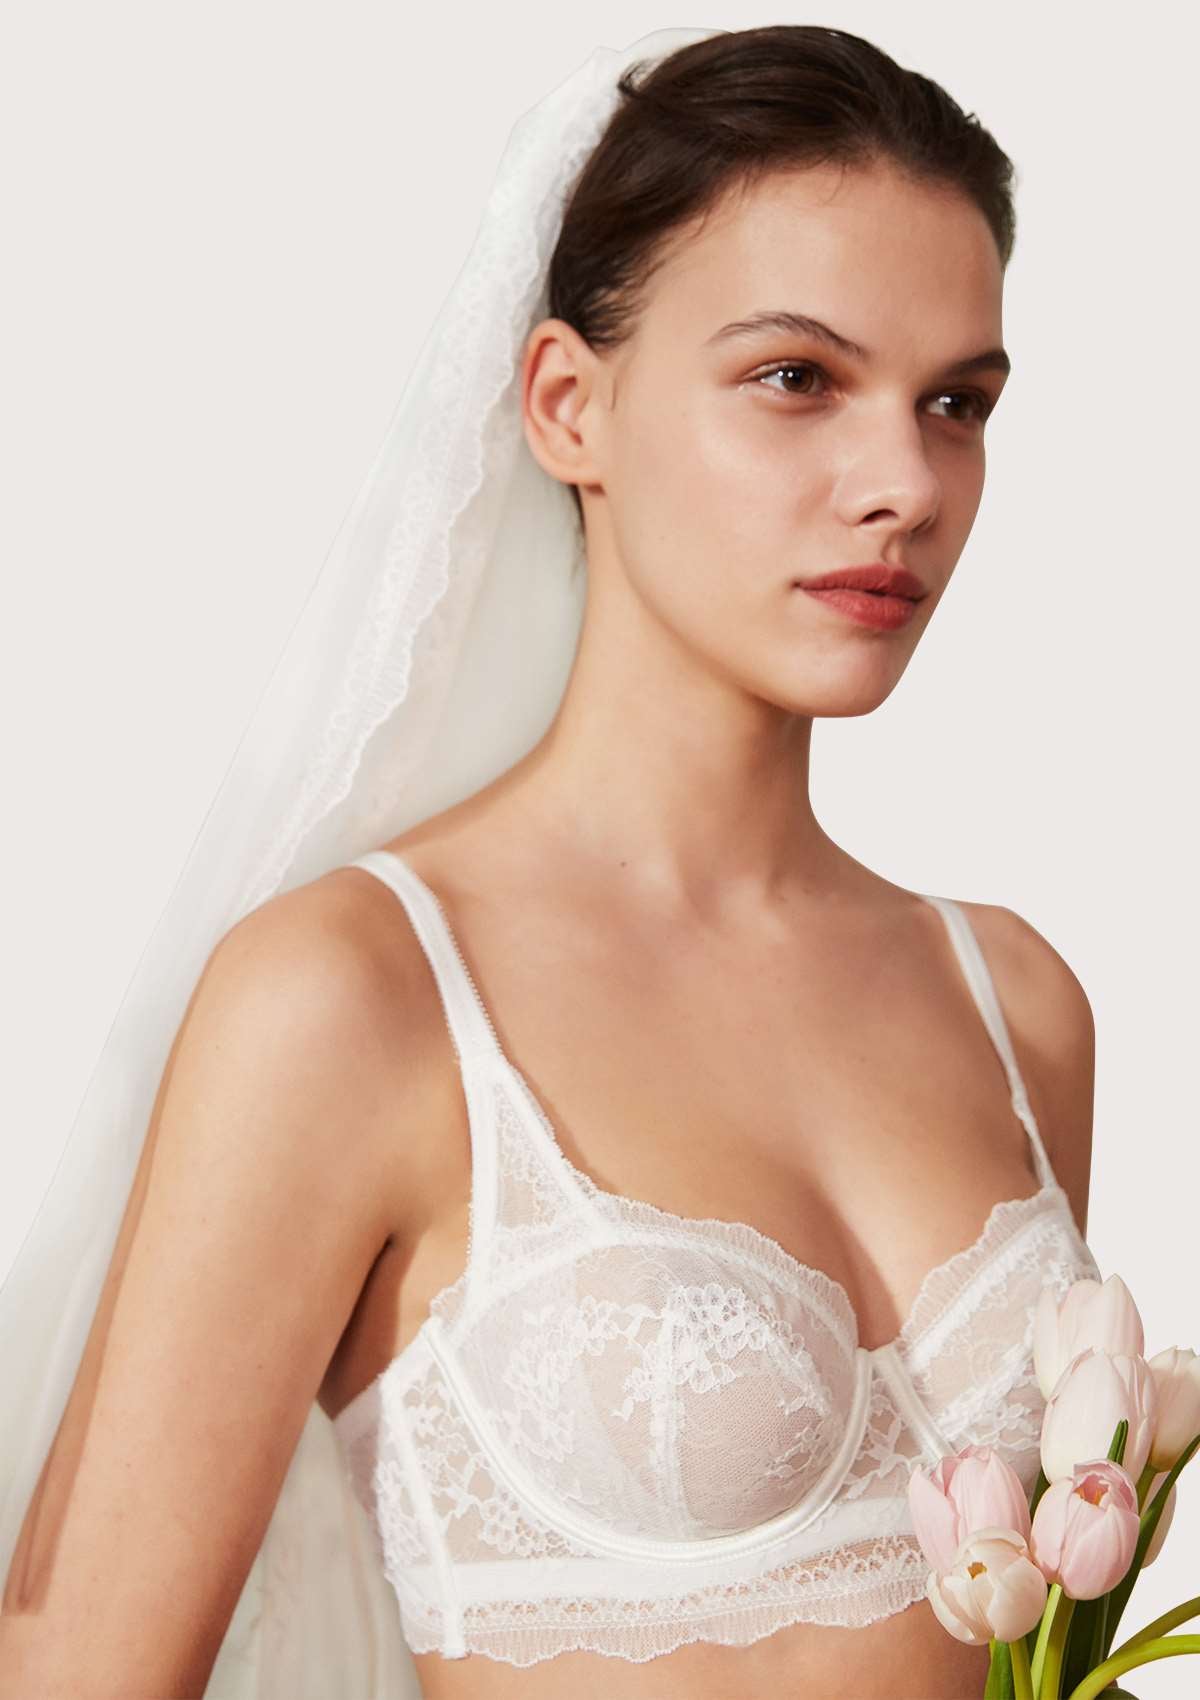 HSIA Floral Lace Unlined Bridal Romantic Balconette Bra Panty Set  - White / 40 / C